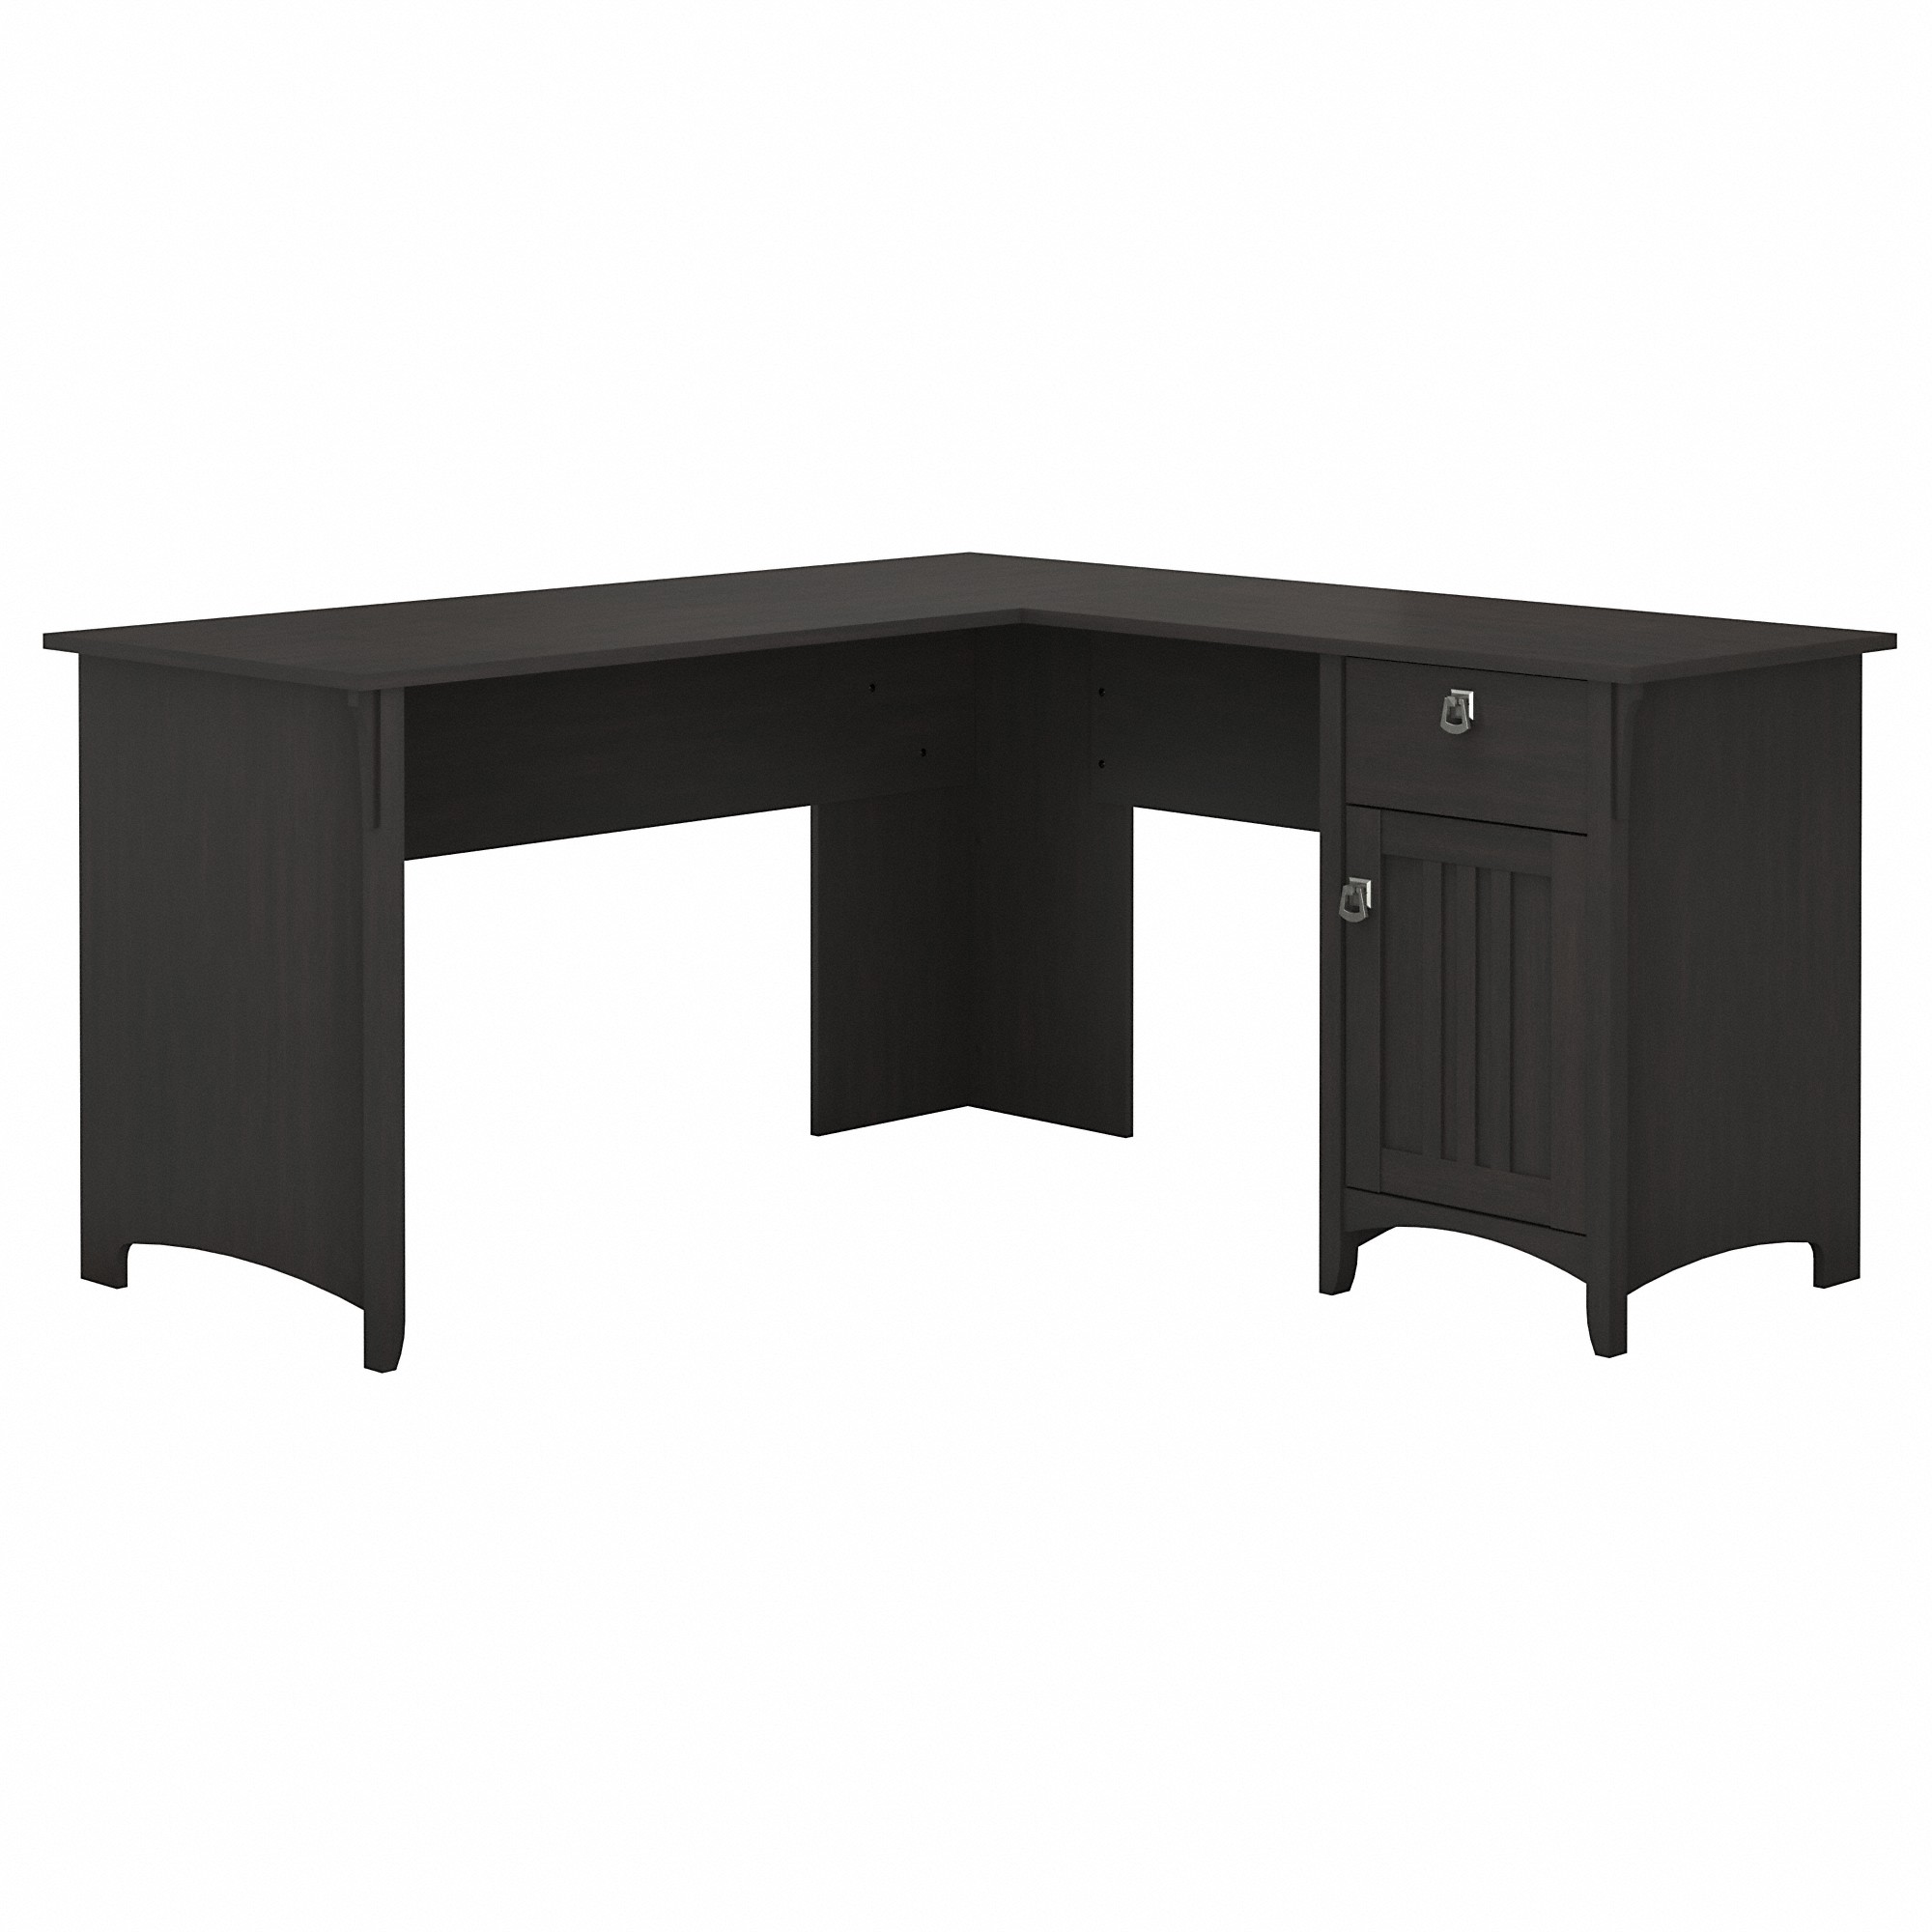 Bush Furniture Salinas 60" L Shaped Desk with Storage, Vintage Black - image 1 of 6